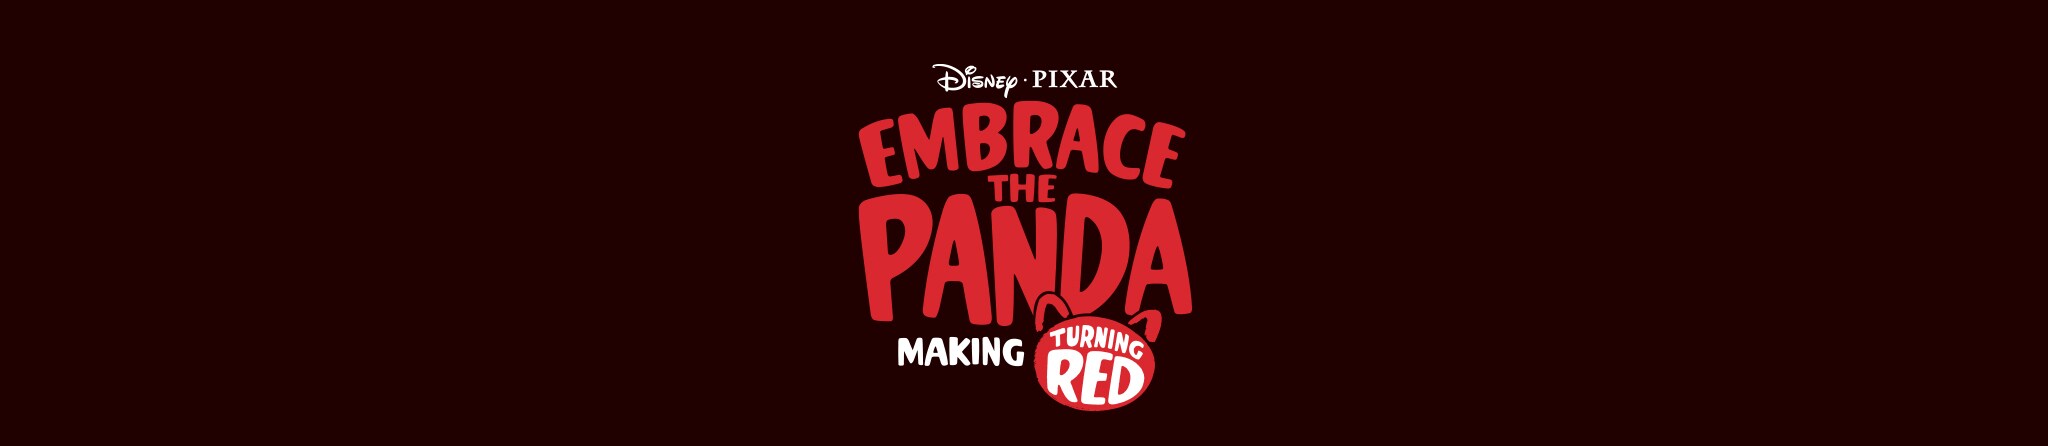 Disney - Pixar | Embrace the Panda: Making Turning Red